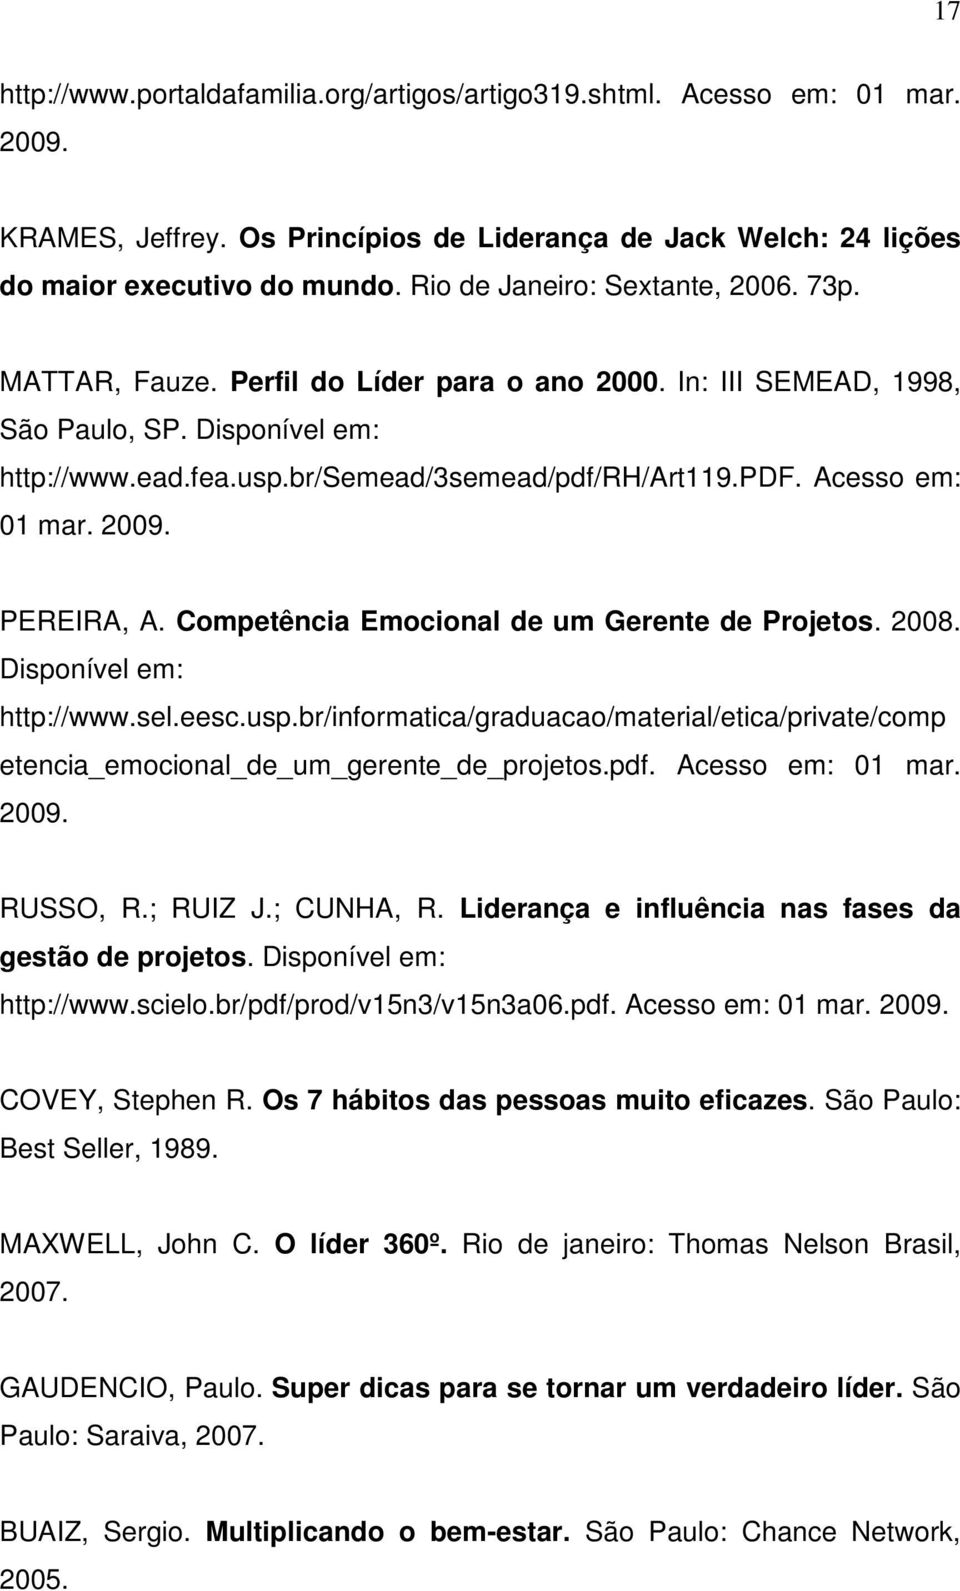 rh/art119.pdf. Acesso em: 01 mar. 2009. PEREIRA, A. Competência Emocional de um Gerente de Projetos. 2008. Disponível em: http://www.sel.eesc.usp.